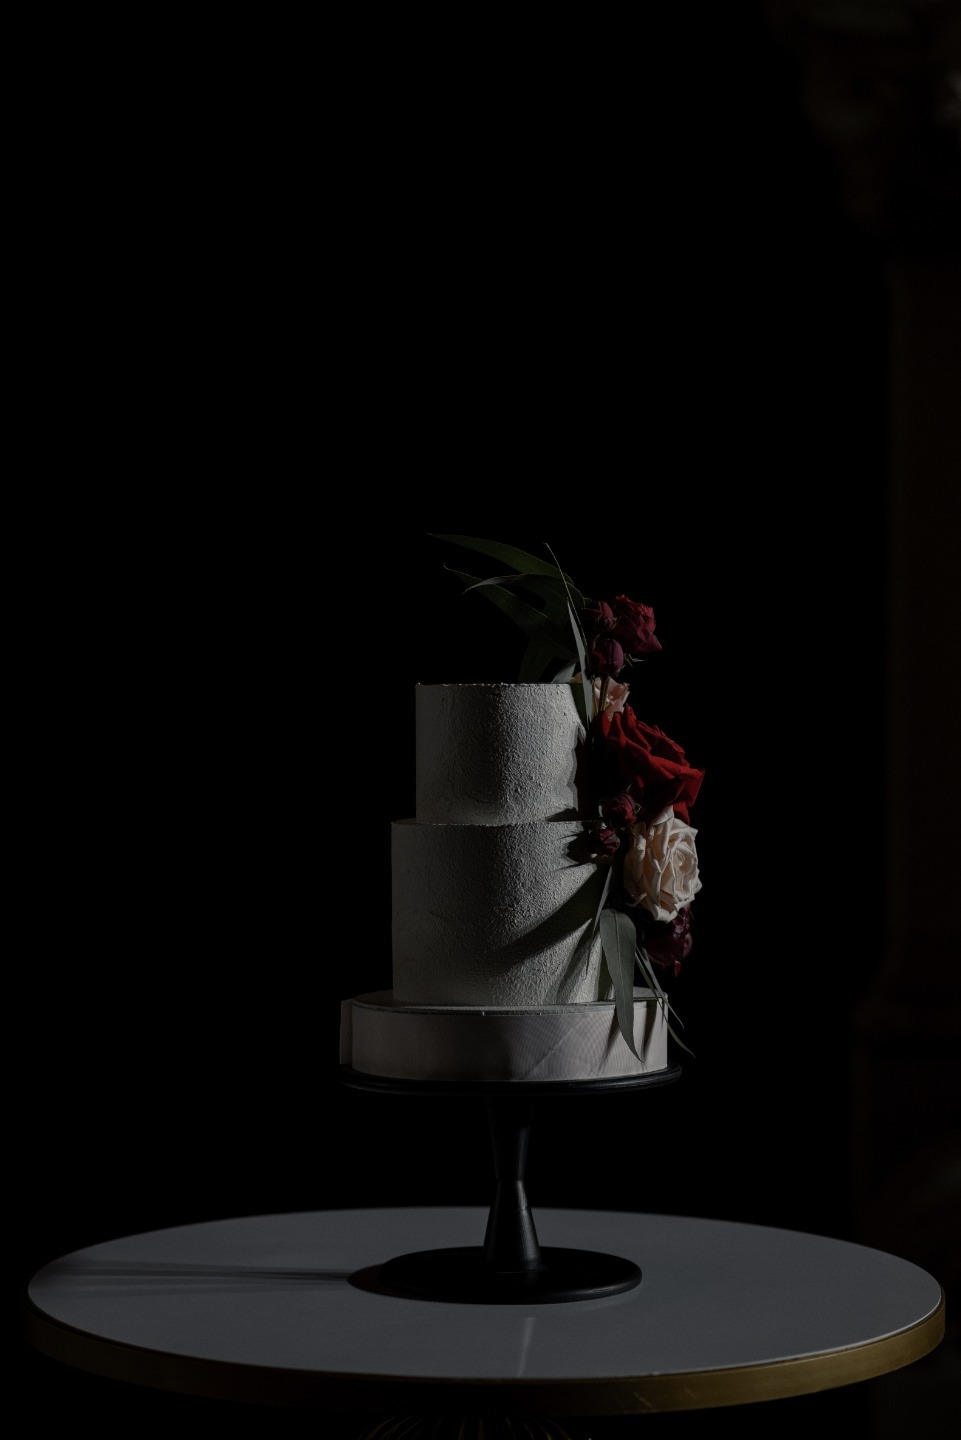 В тёмной гамме: камерная свадьба для самых близких